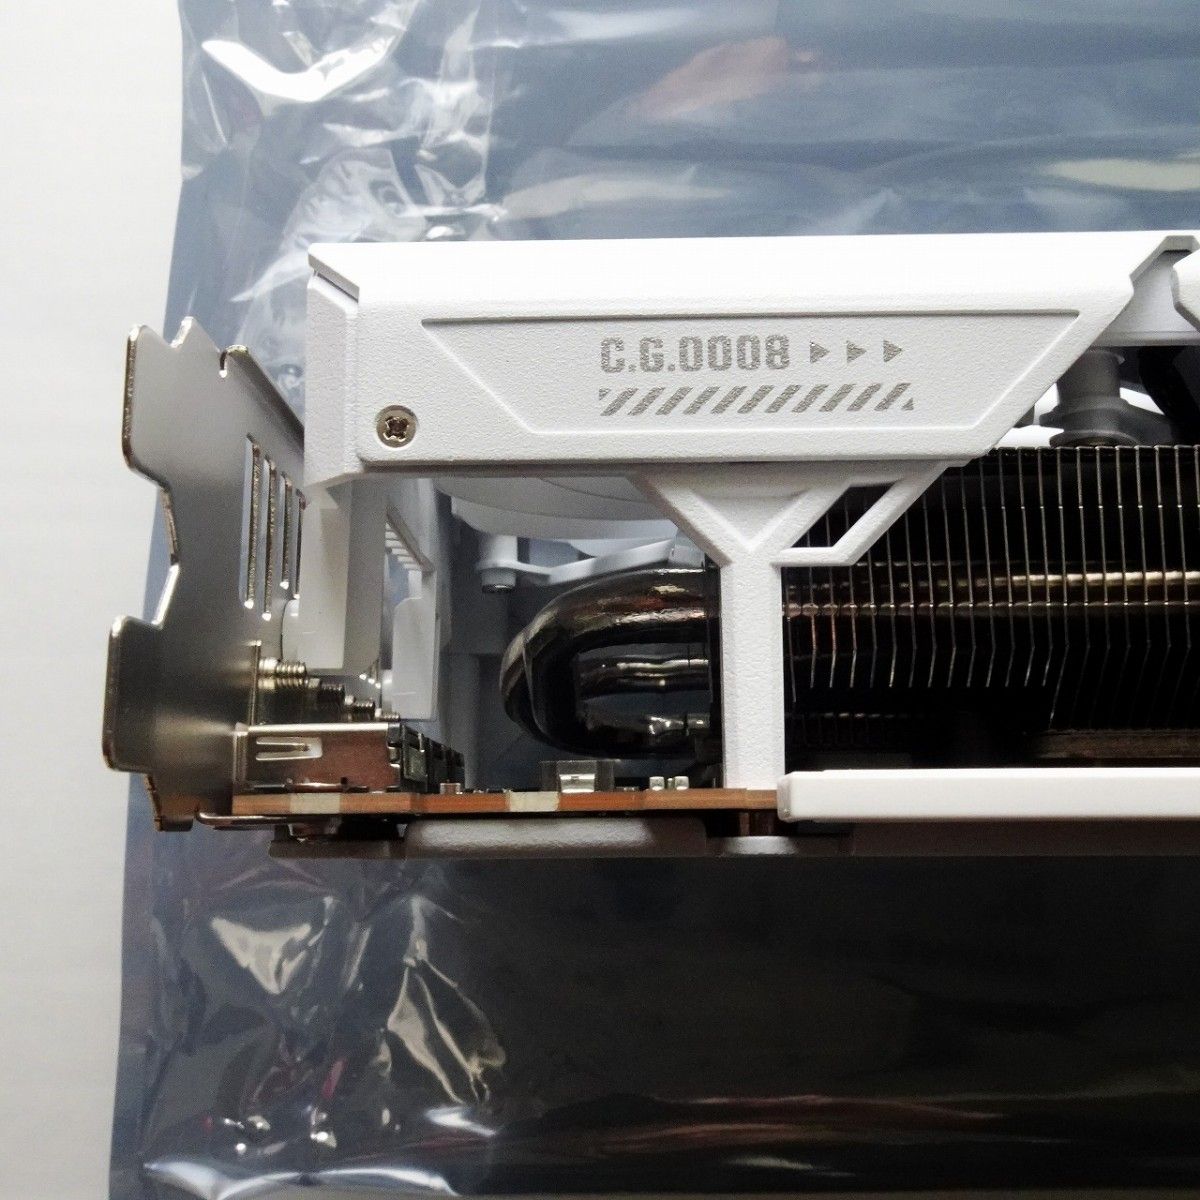 ASUS Radeon RX 7800 XT ホワイト 16GB  TUF-RX7800XT-O16G-WHITE-GAMING